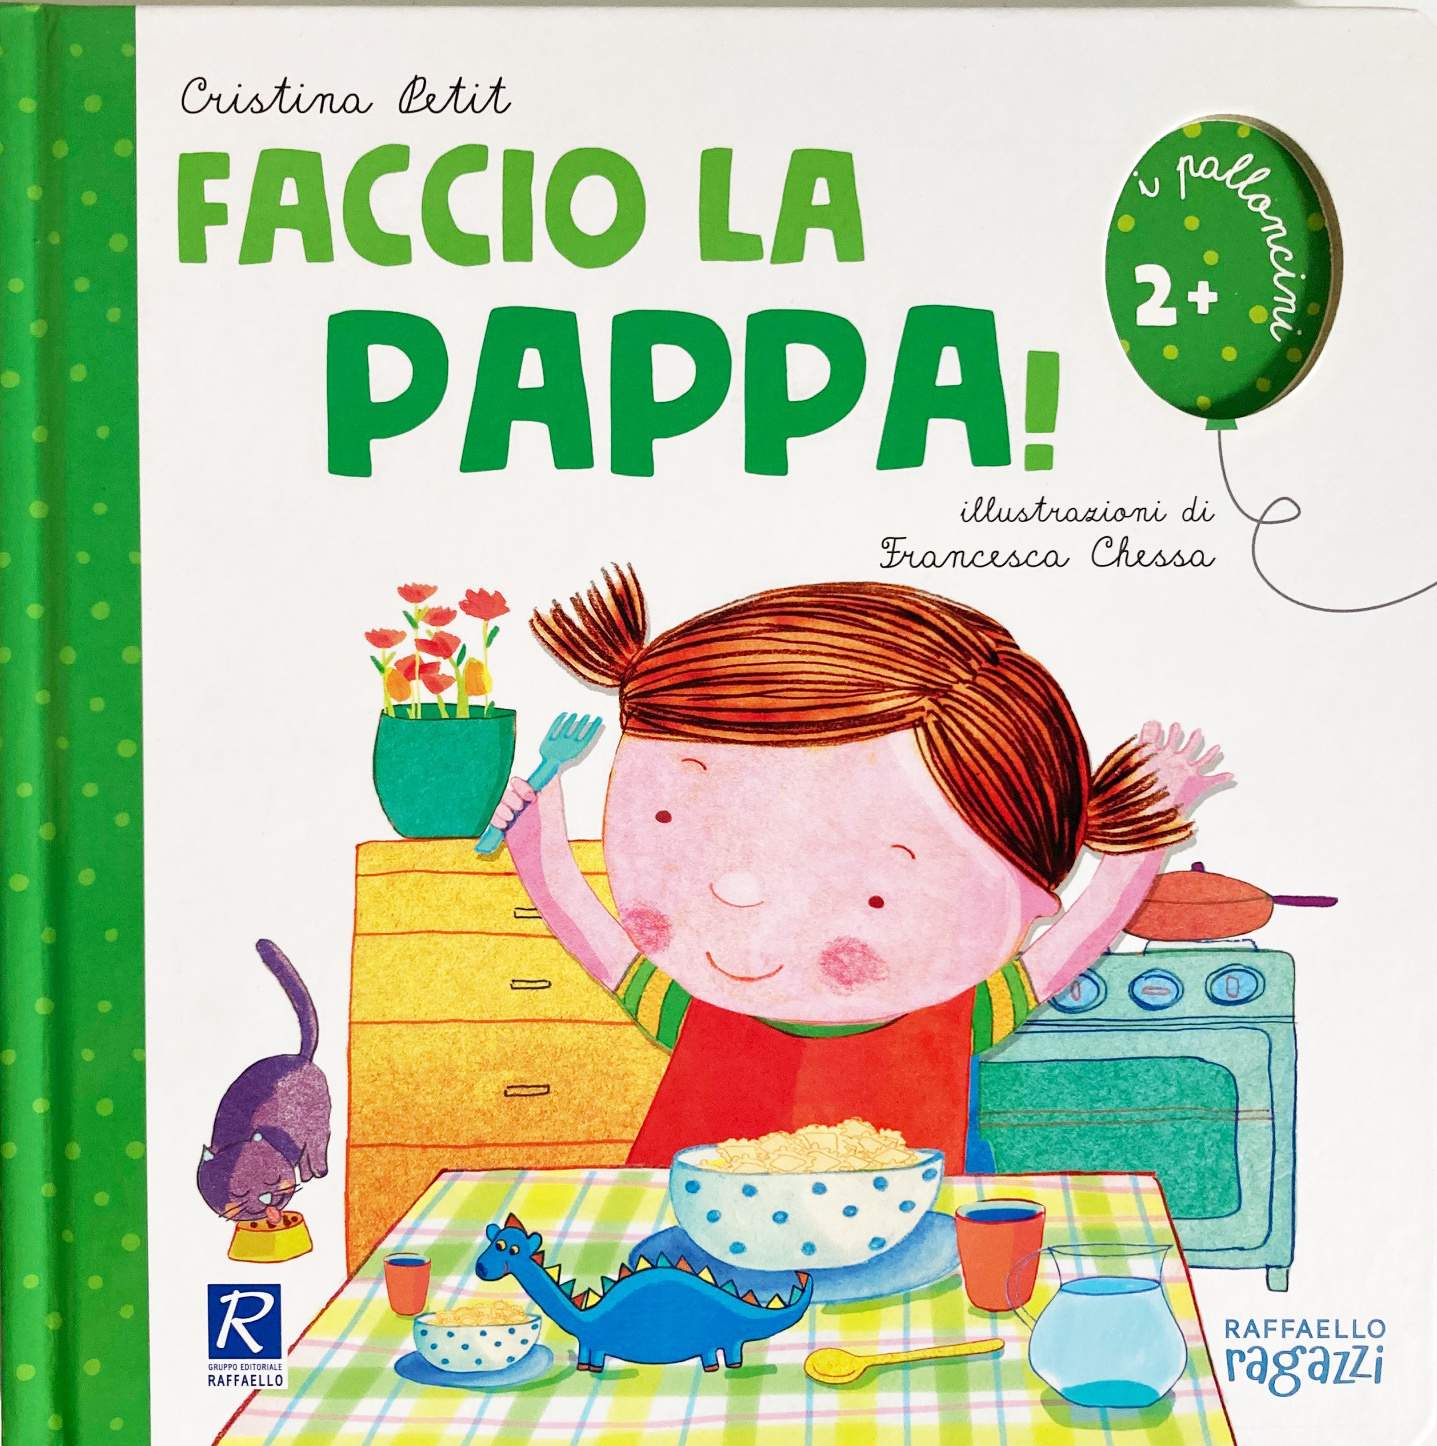 Faccio la pappa, Testo di Cristina Petit, Raffaello Ragazzi Editore, 2019